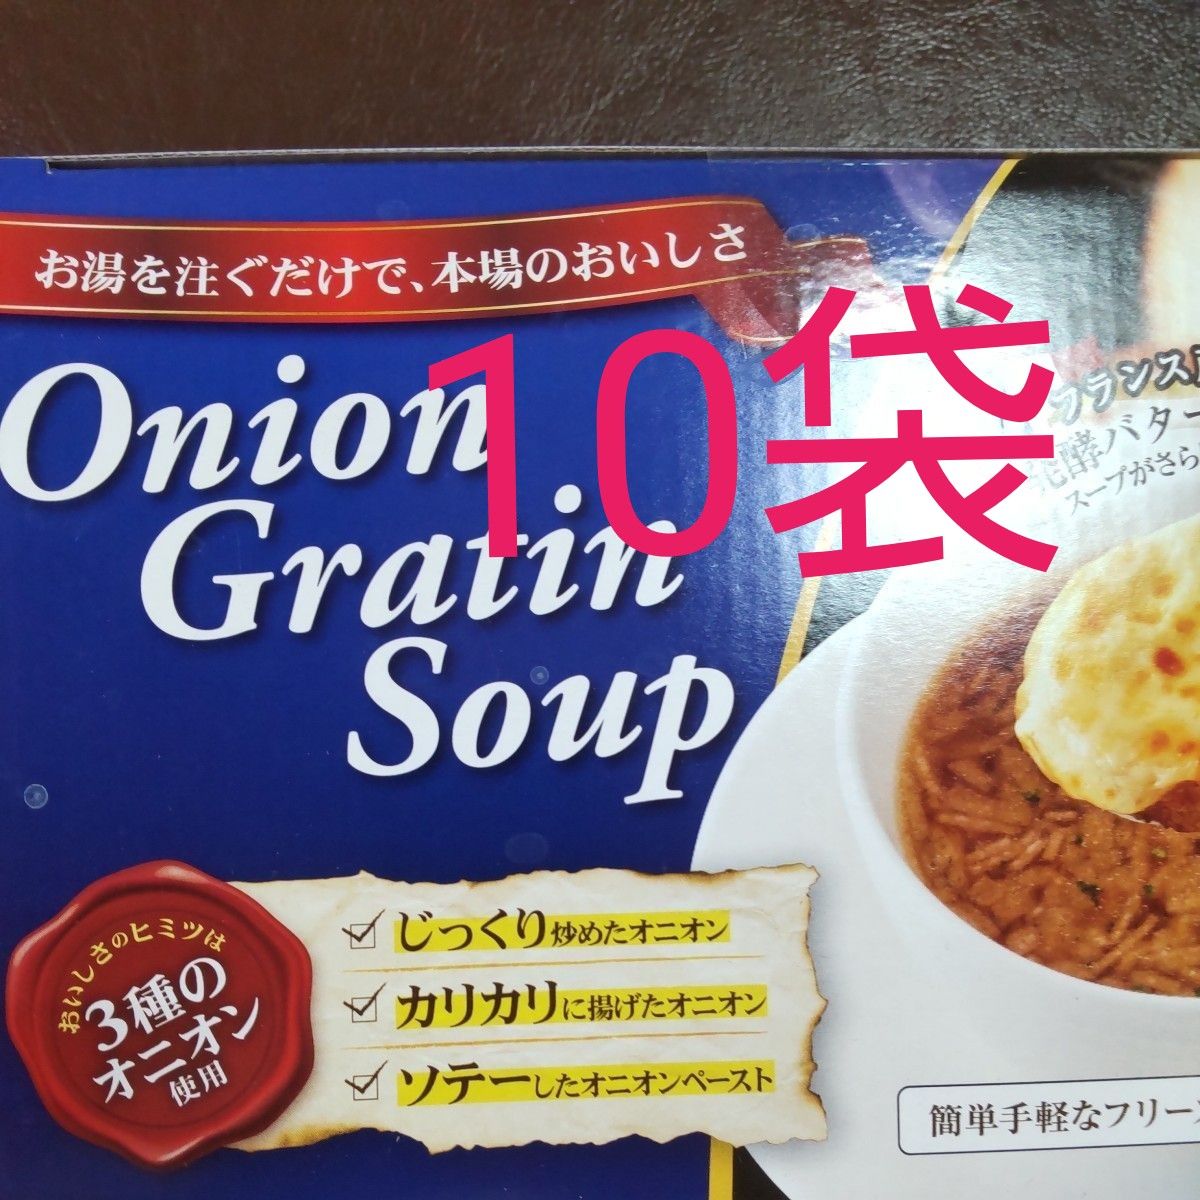 オニオングラタンスープ 10袋 コストコ 個包装